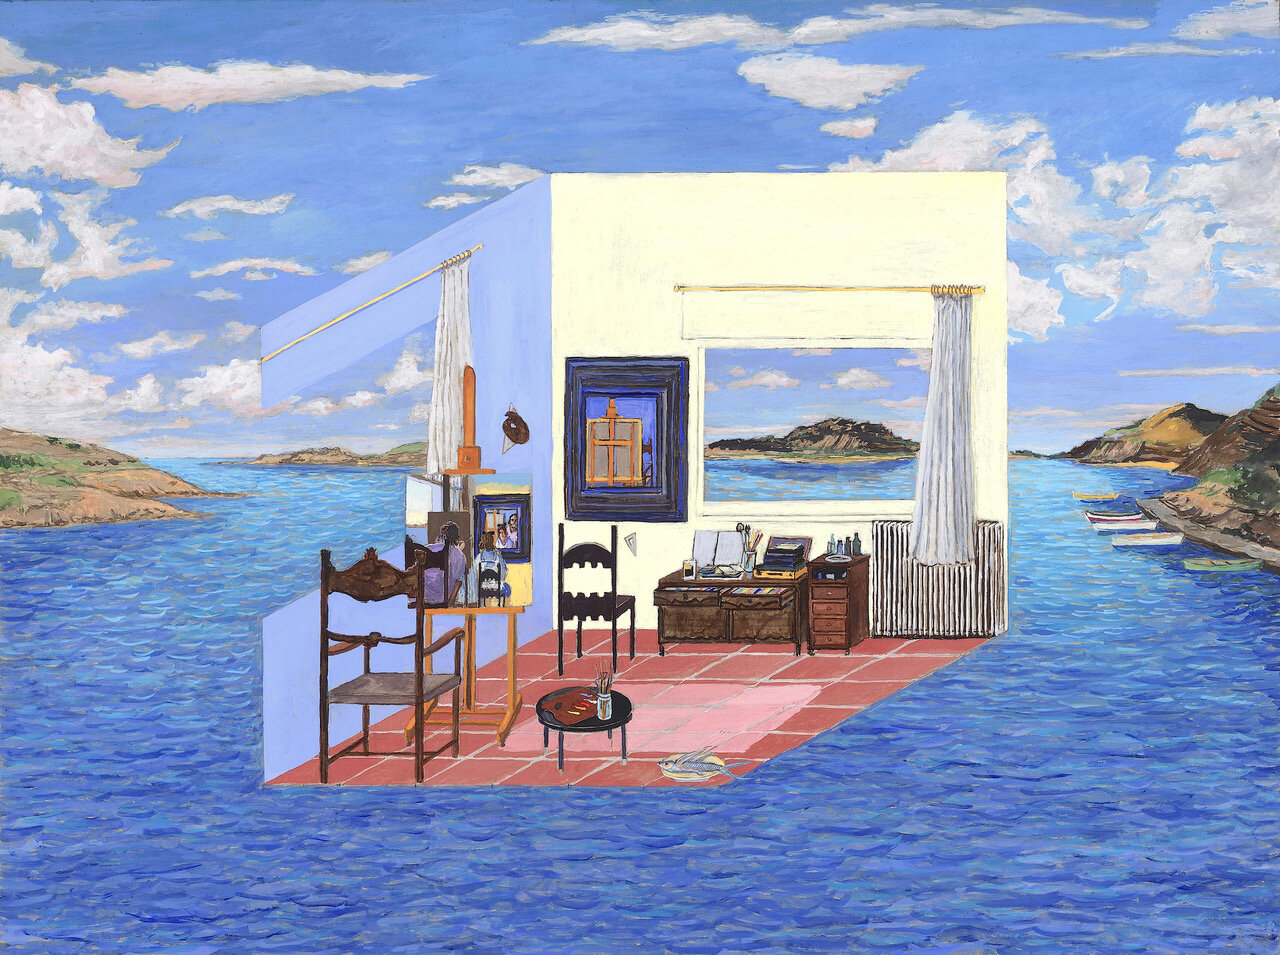  Dali's Studio, 2007, gouache on board, 50.5 cm x 67.8 cm   